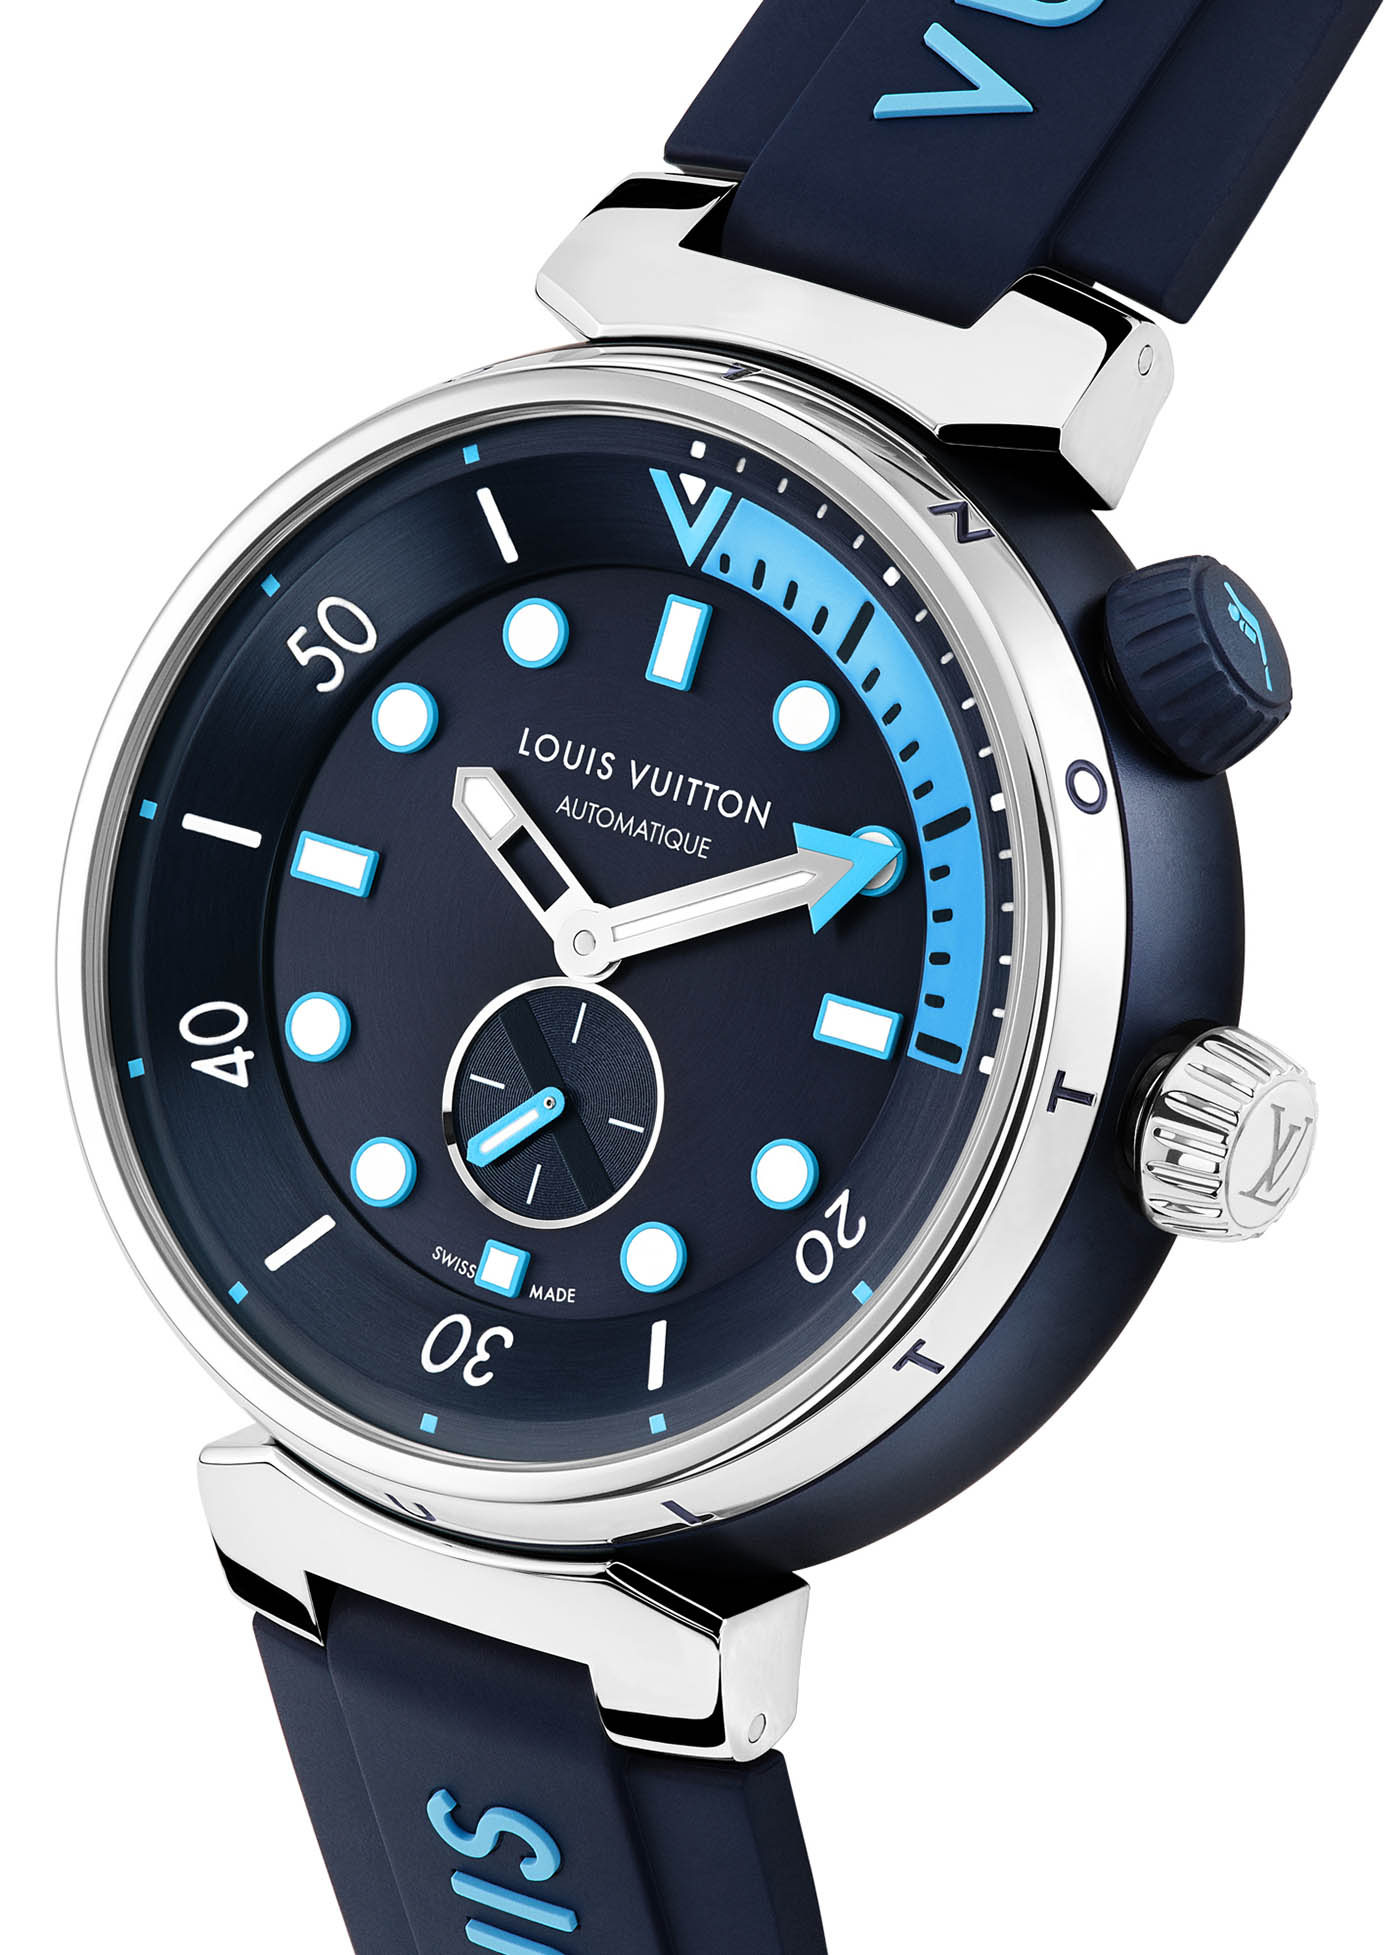 16 Best Louis Vuitton mens watches ideas  louis vuitton louis vuitton  watches watches